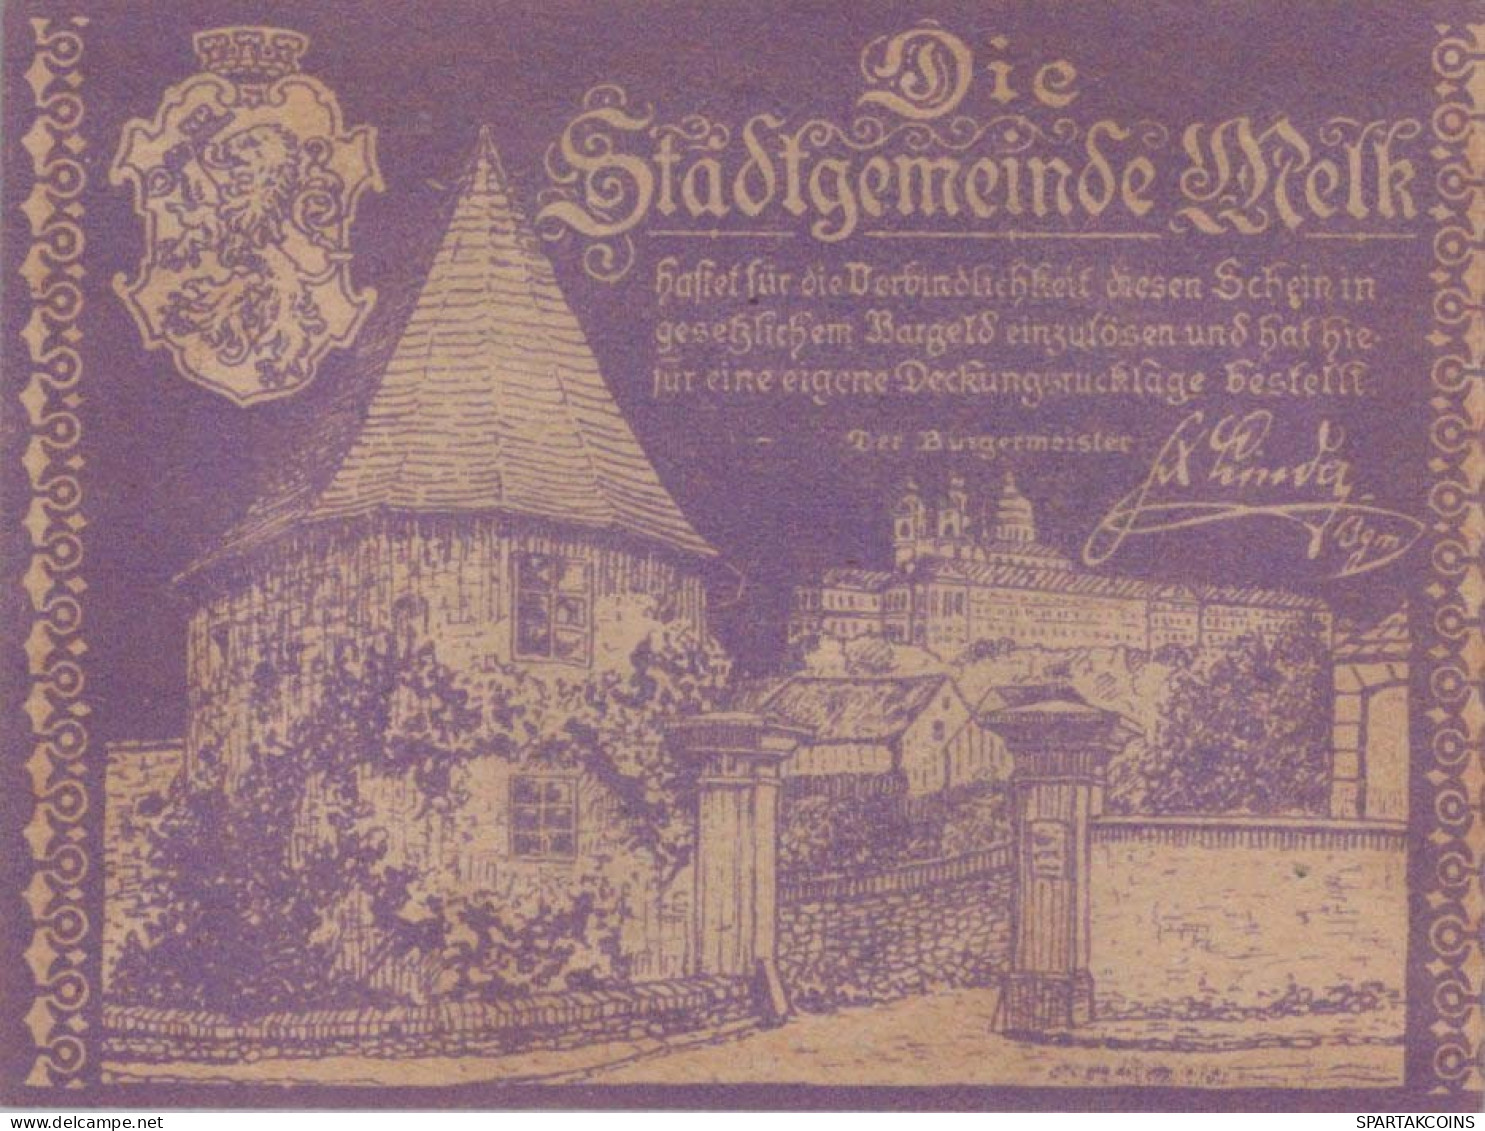 10 HELLER 1920 Stadt MELK Niedrigeren Österreich Notgeld Banknote #PD804 - [11] Emissions Locales